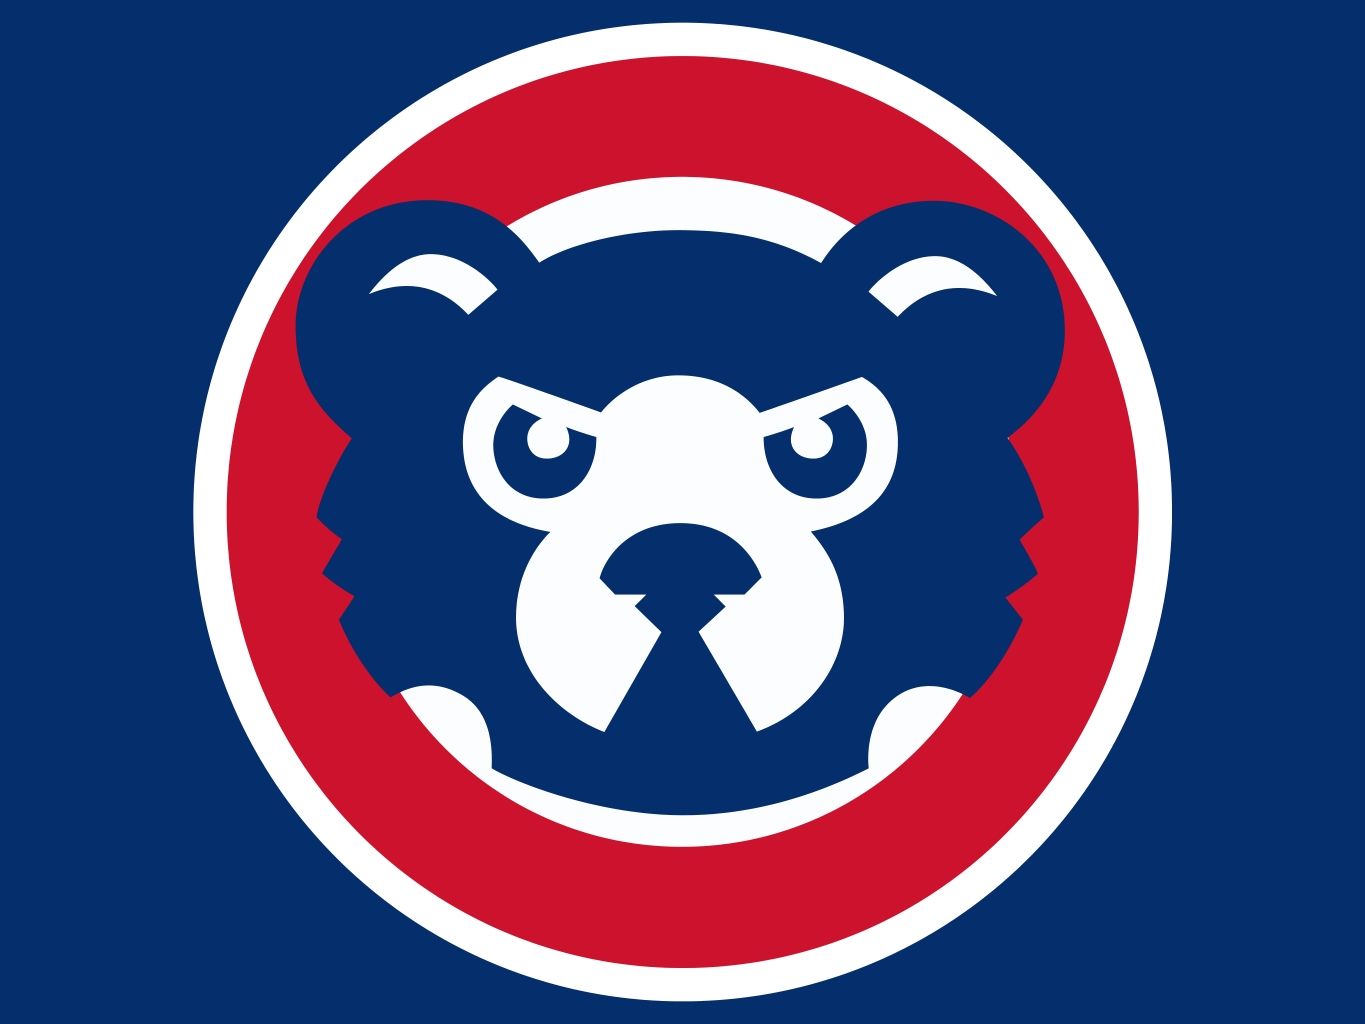 chicago cubs logos. Chicago Cubs Logo Clip Art. Chicago cubs logo image, Mlb logos, Baseball banner